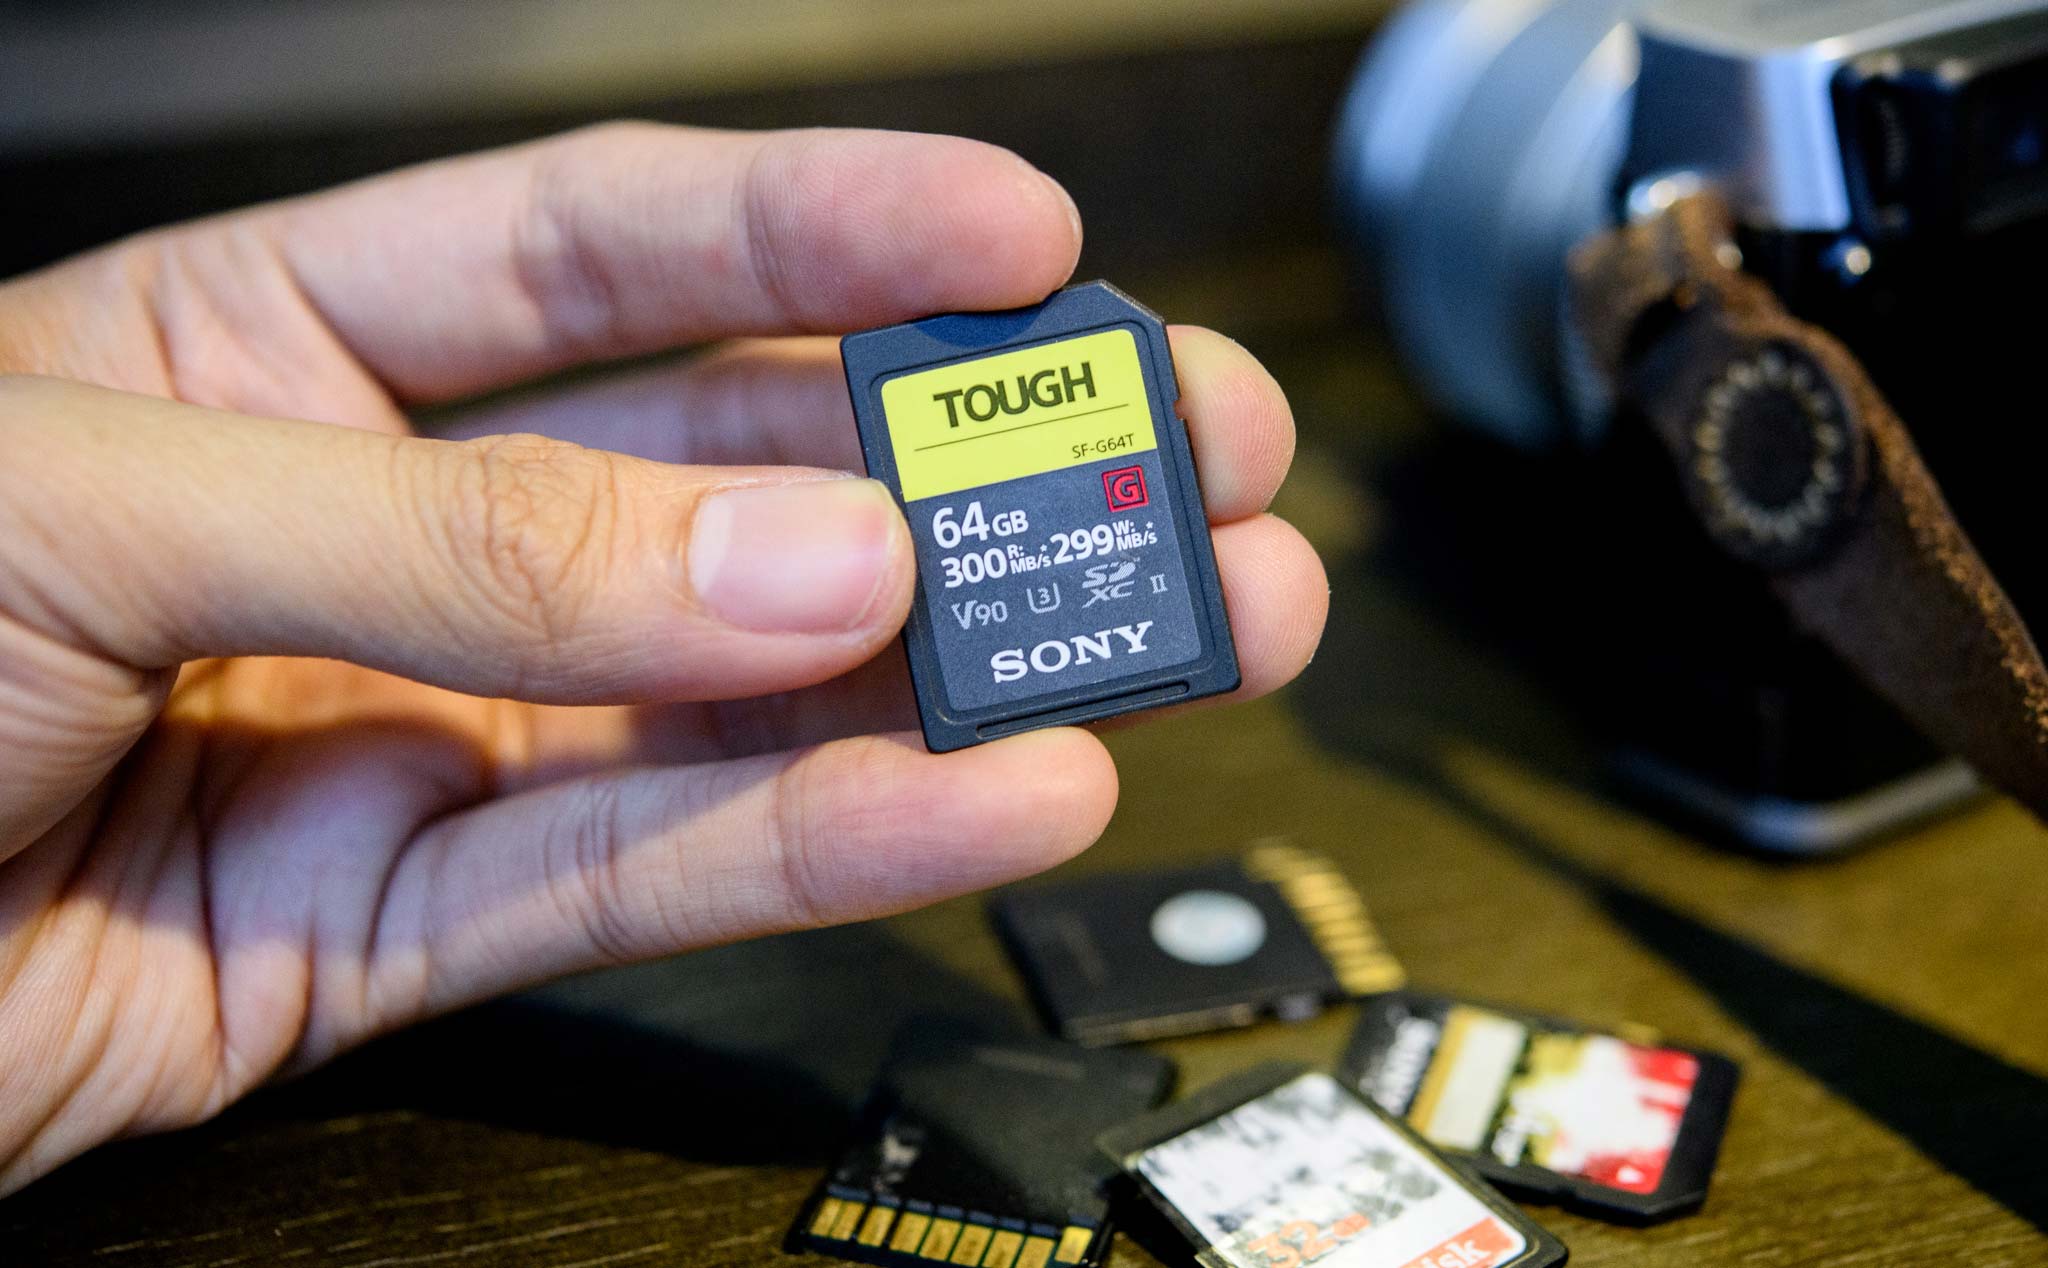 Trên tay thẻ nhớ SD Sony Tough siêu bền, rất khó để hư, tốc độ nhanh, giá cao